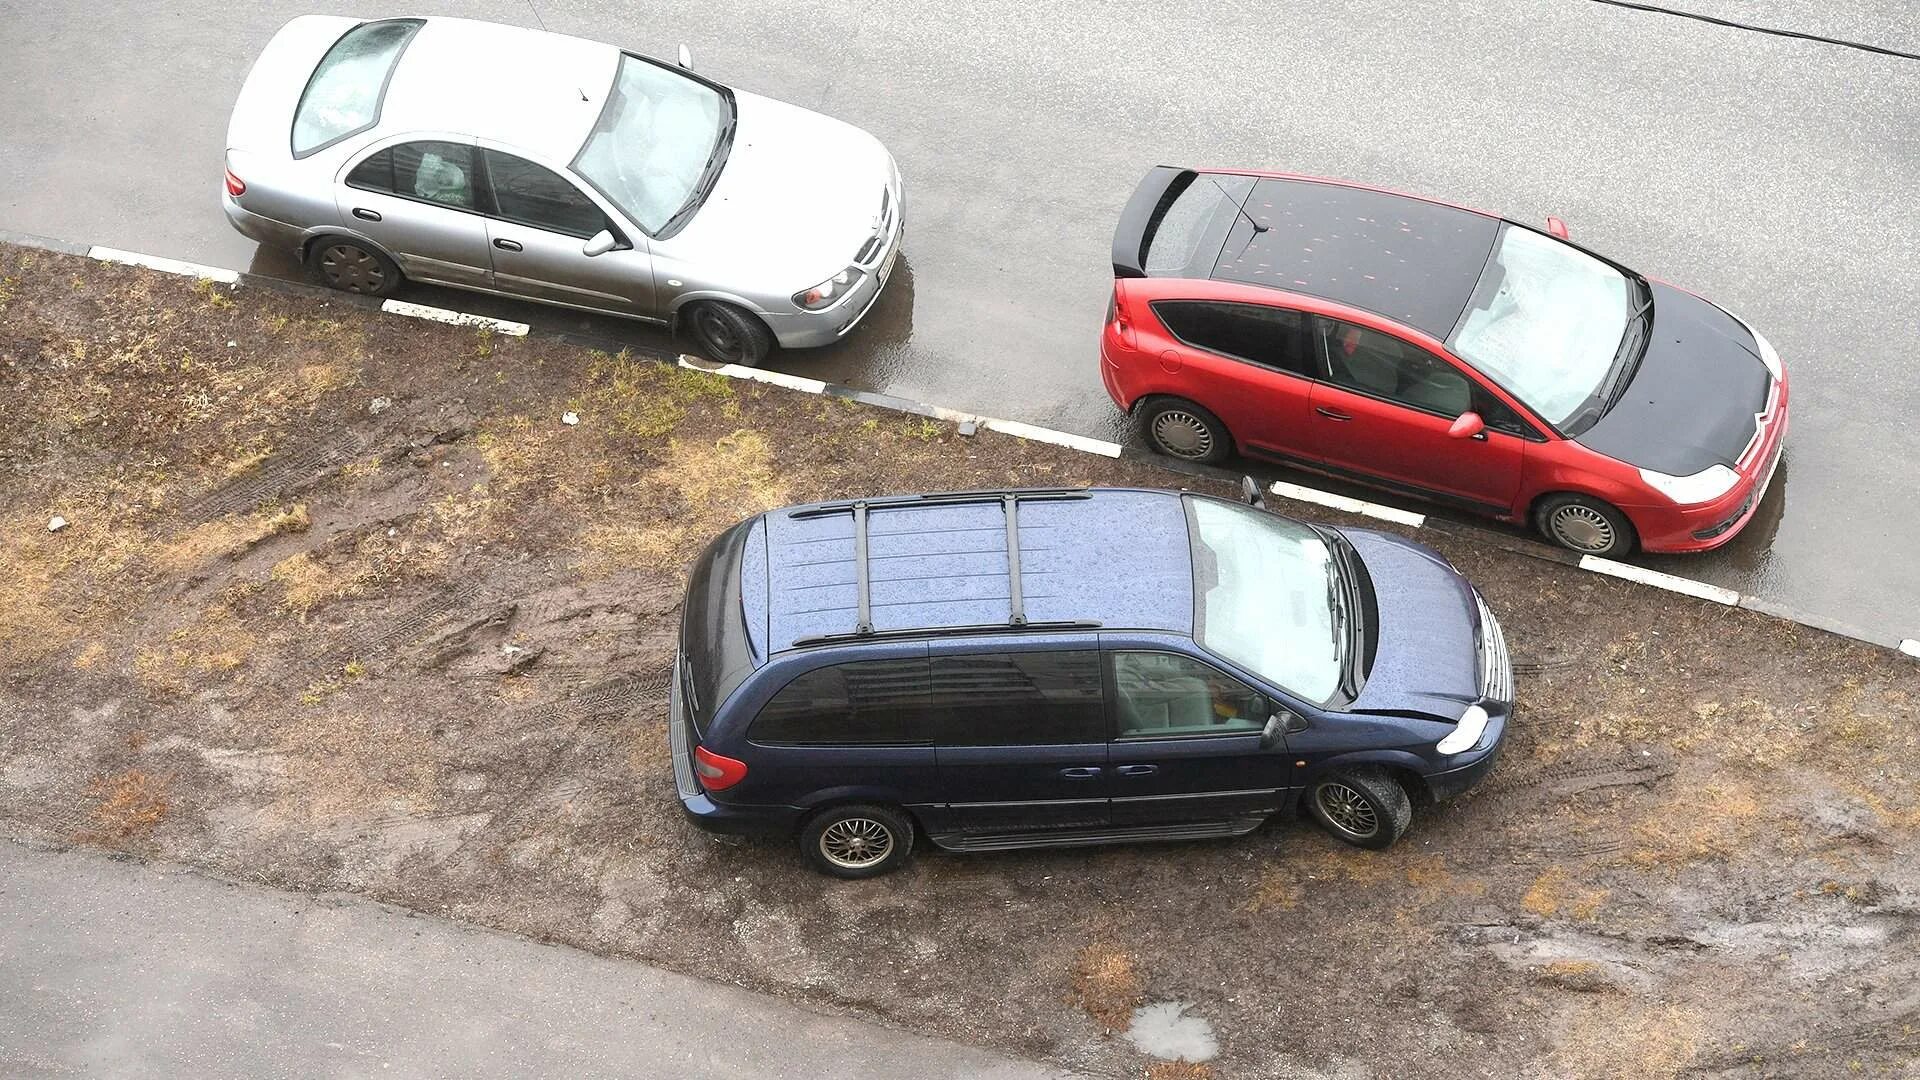 Парковка на тротуаре во дворе жилого дома. Парковка на газоне. Припарковался на газоне. Машина во дворе. Штраф за парковку на газоне во дворе.